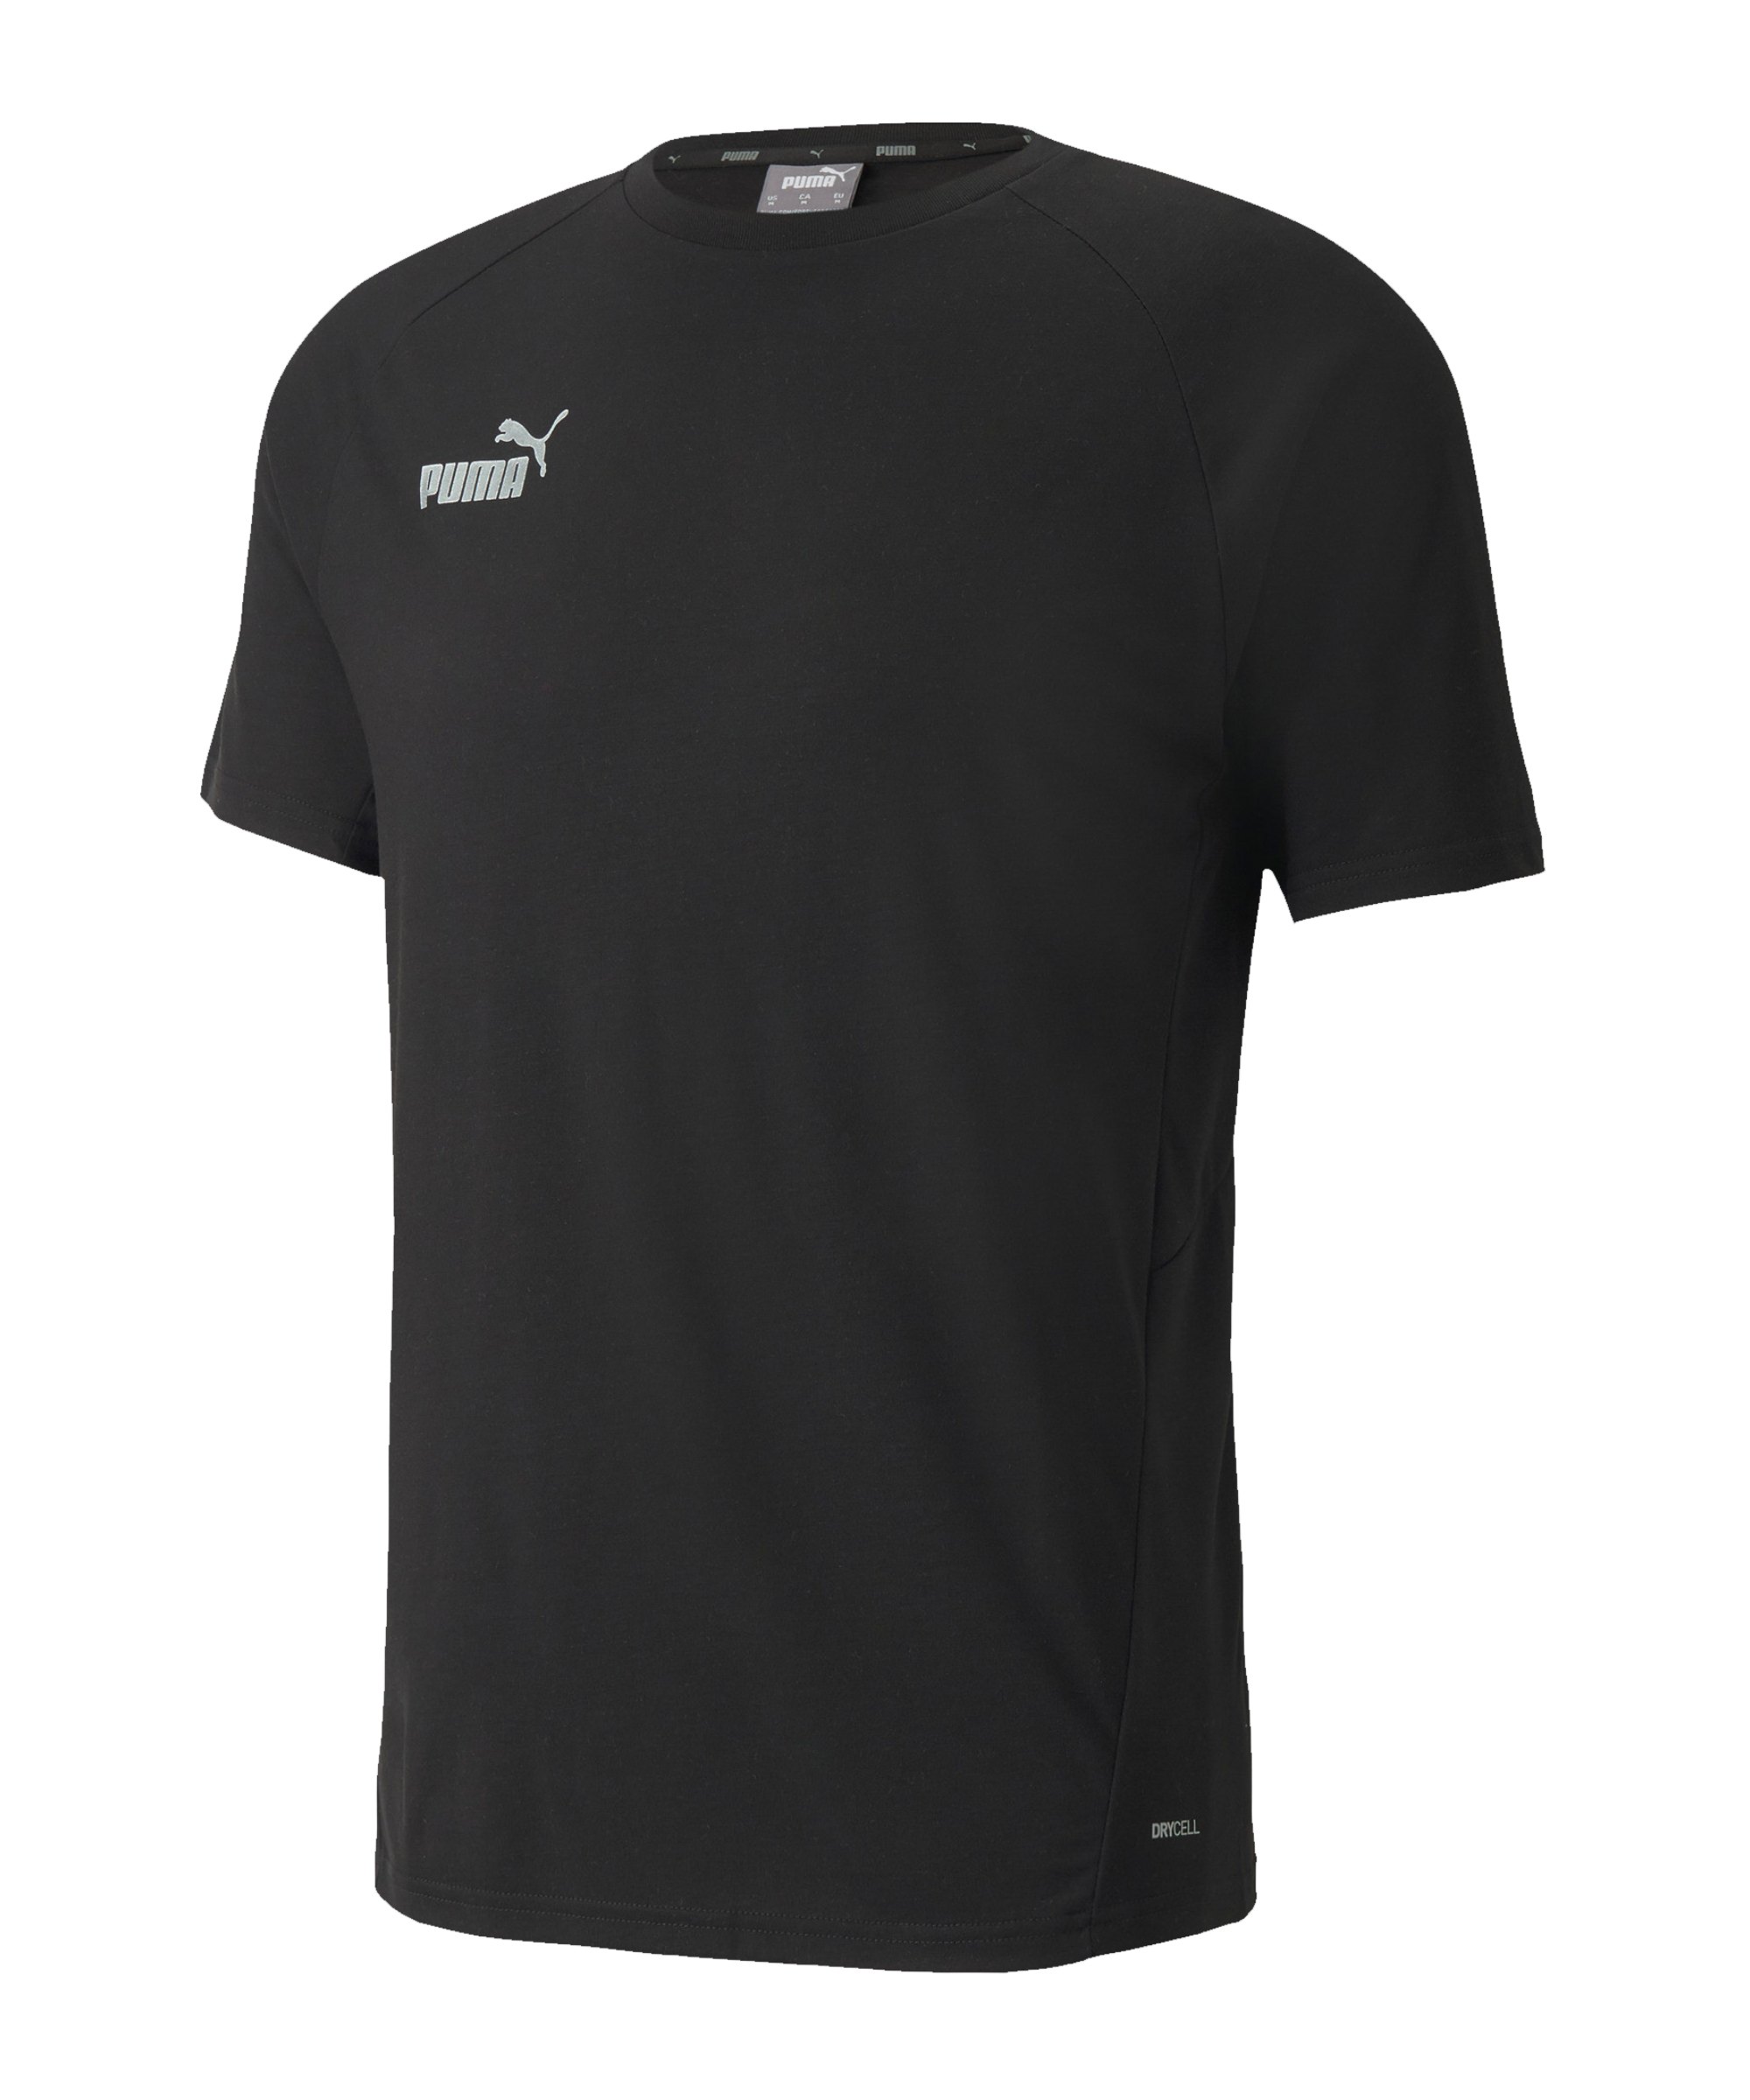 PUMA teamFINAL Casuals T-Shirt Schwarz F03 - schwarz